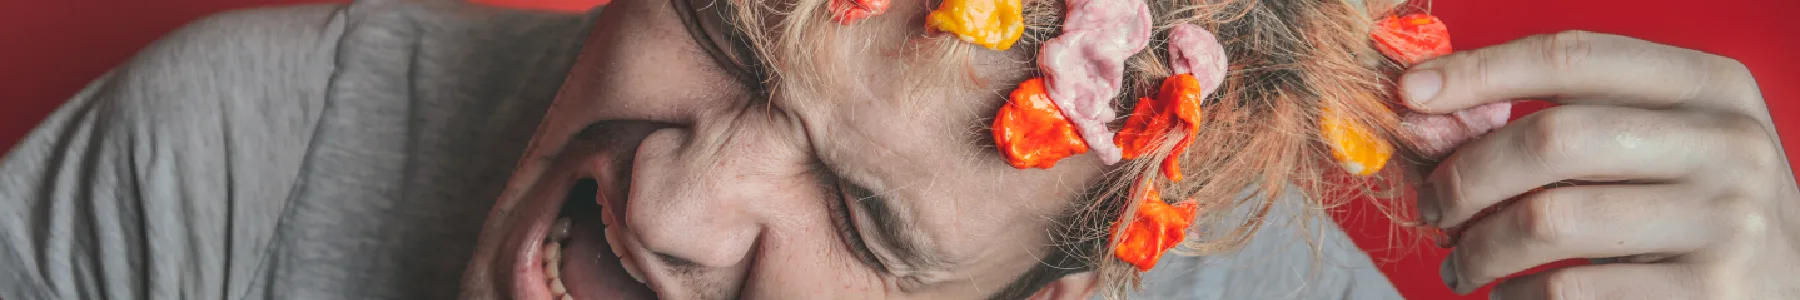 Obrázek nešťastného muže kroutící se v bolestech s barevnými žvýkačkami ve vlasech vyjadřující kontroverzní přísady běžně dostupných žvýkaček | Pro web: zdravezvykani.cz | Zdroj: shutterstock.com